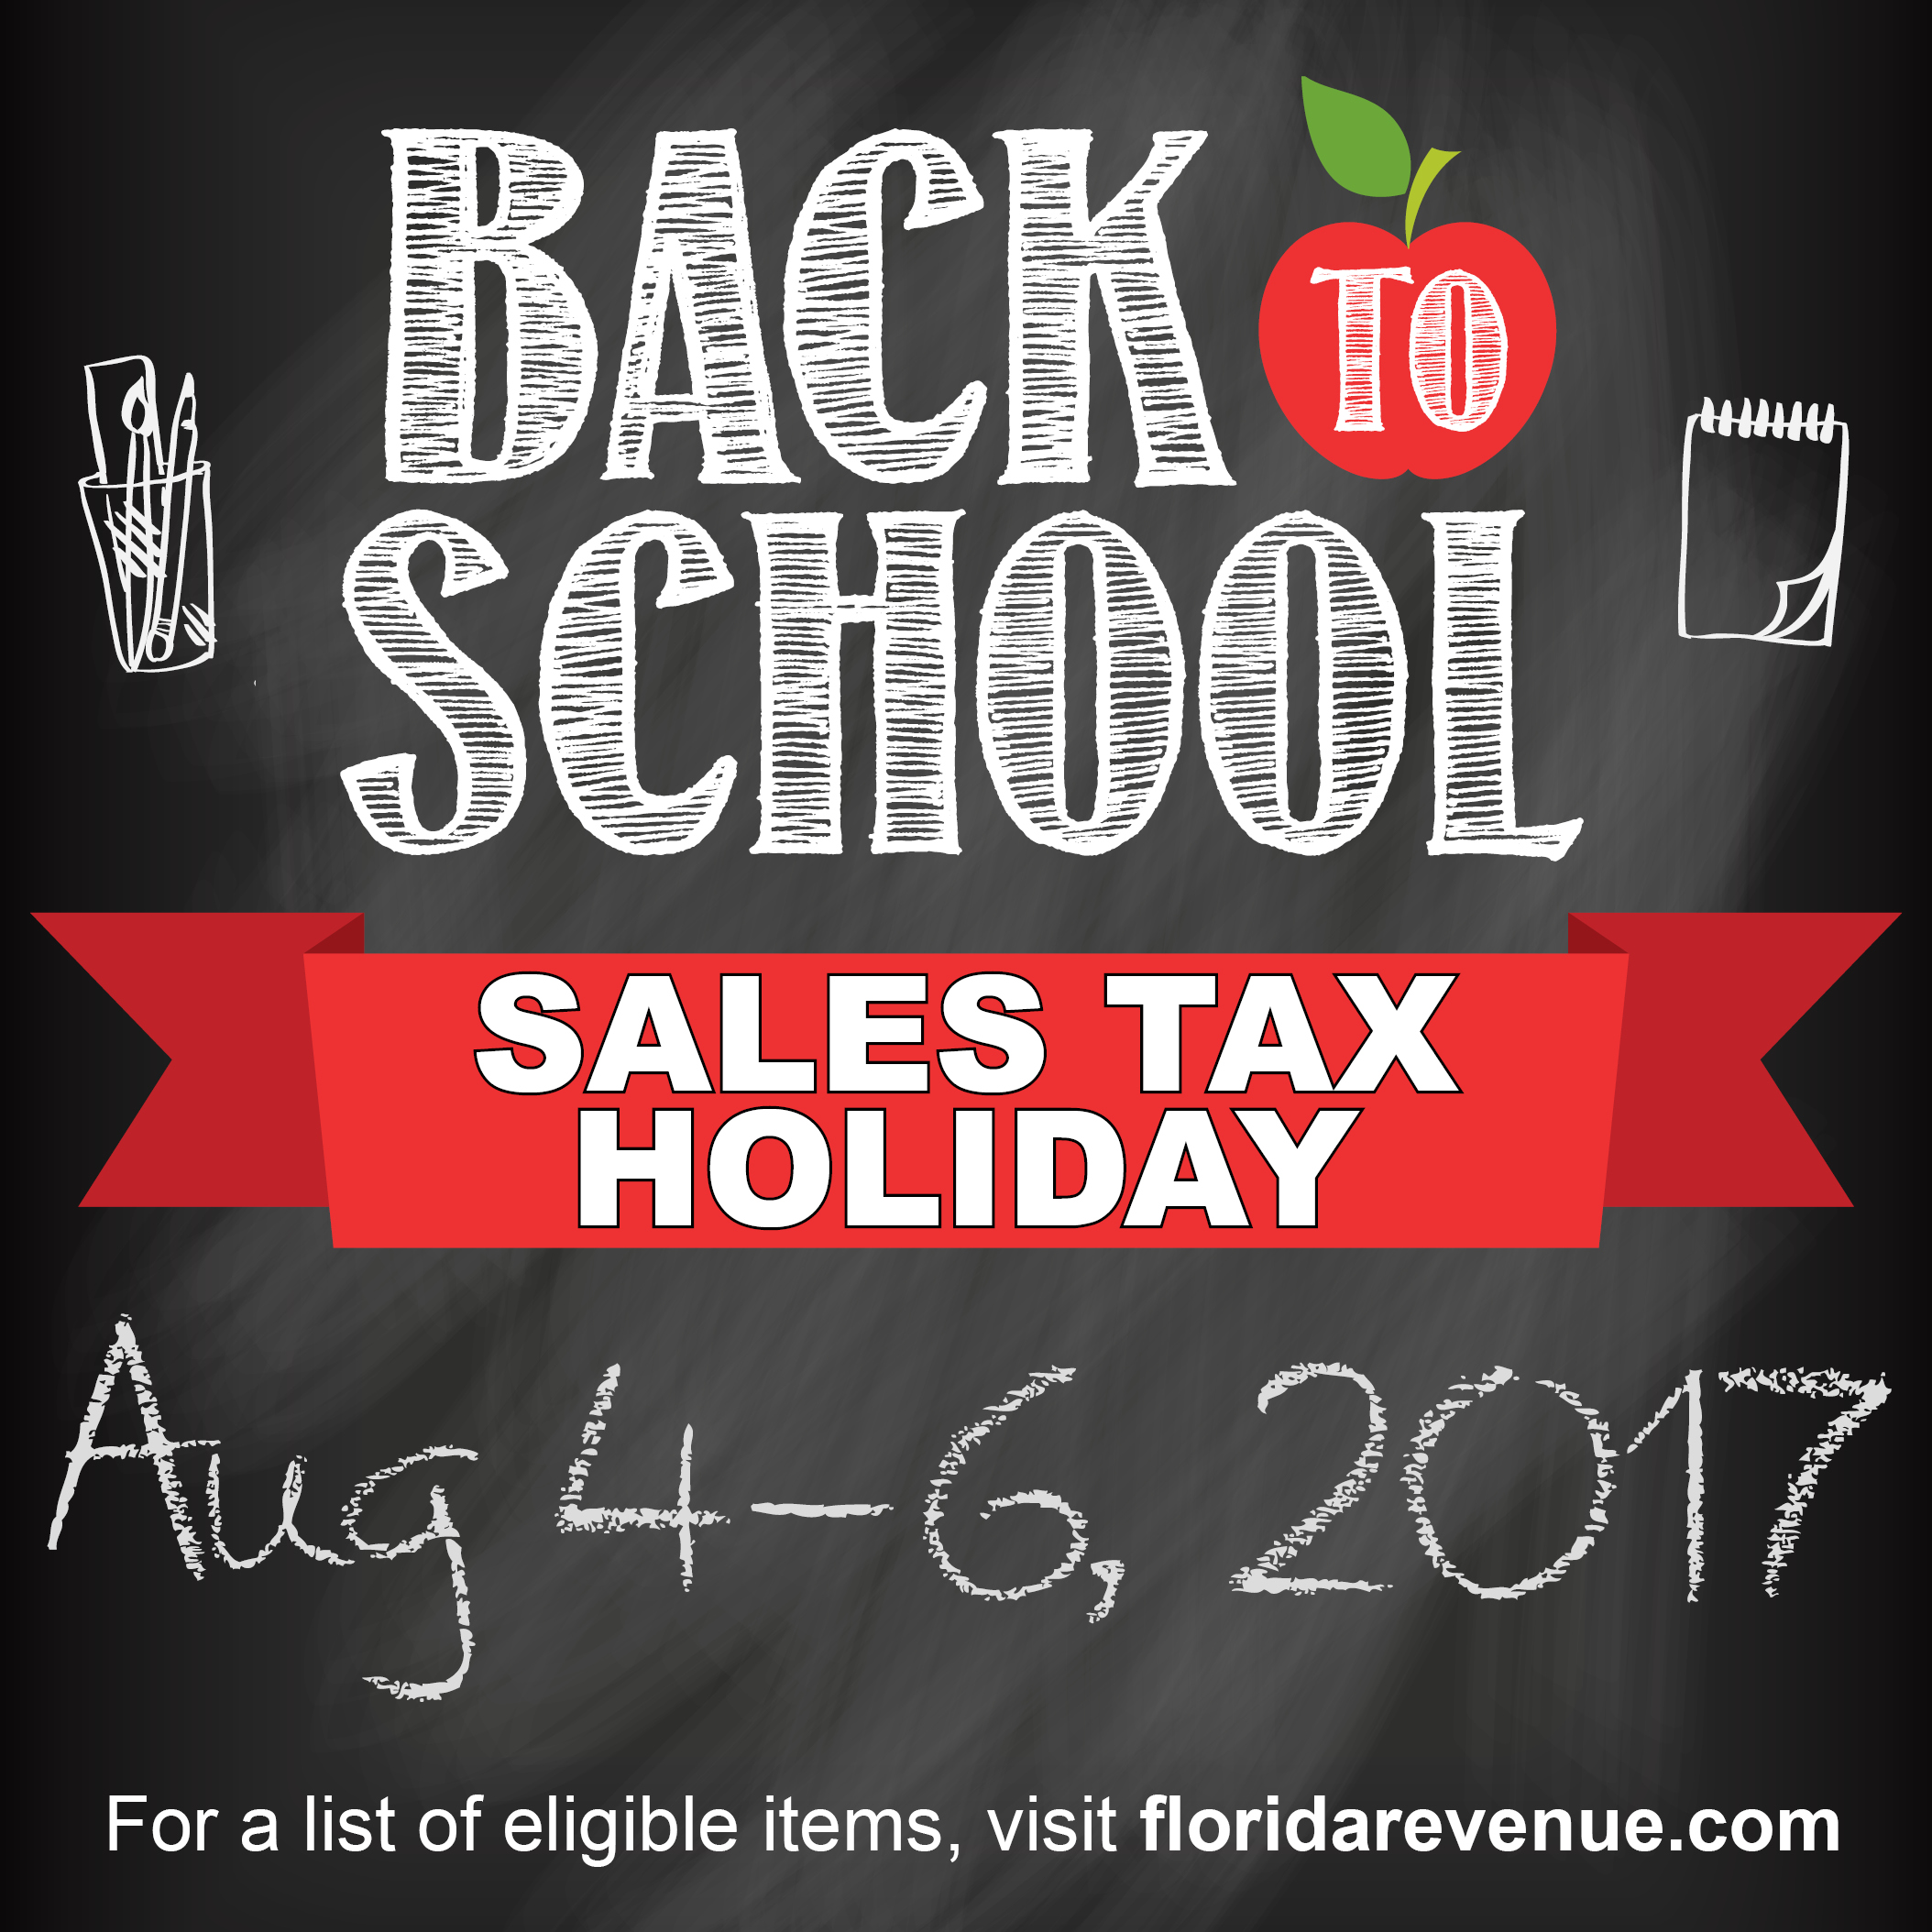 Backtoschool sales tax holiday runs through weekend